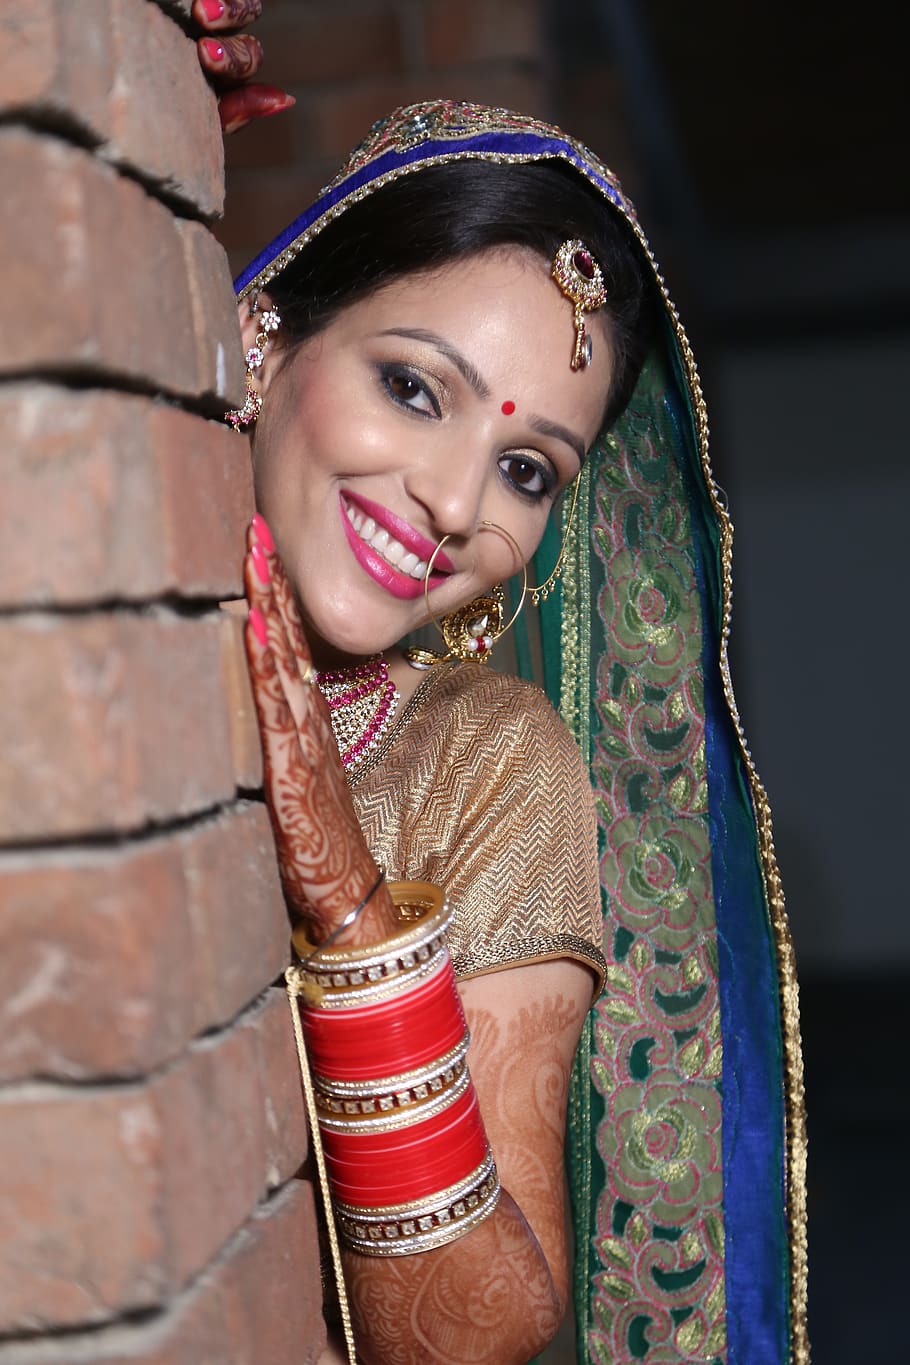 pengantin wanita, pernikahan, India, pakaian tradisional, tersenyum, dewasa muda, potret, satu orang, melihat kamera, wanita muda